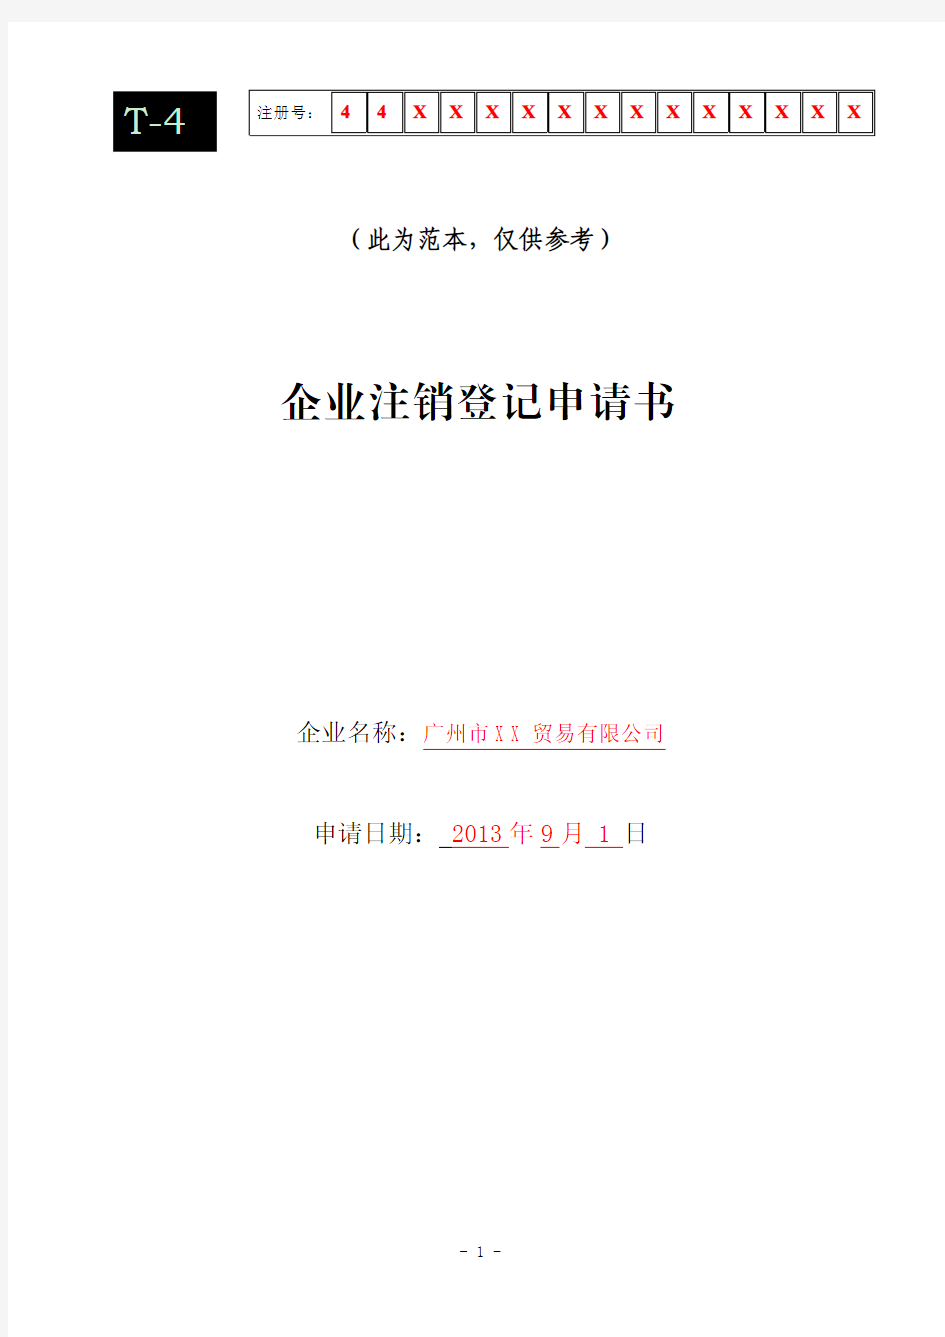 企业注销登记申请书 - 广州红盾信息网